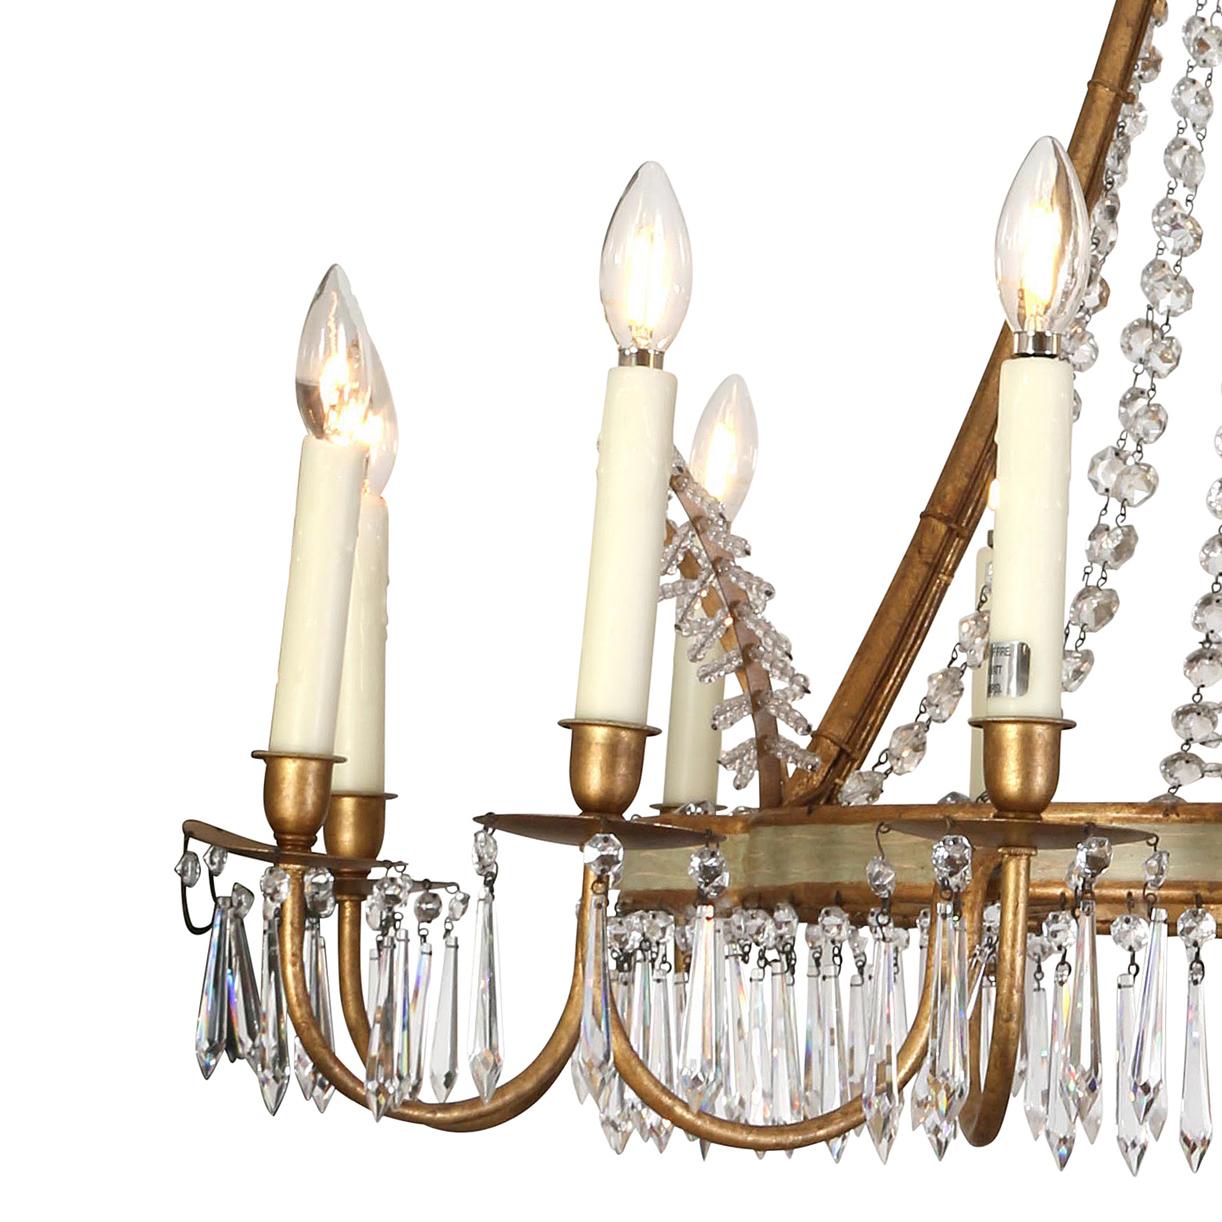 Un fantastique lustre à douze branches avec un anneau central courbé peint et doré, décoré de prismes de cristal suspendus à l'anneau et de rangées de perles de verre suspendues à la 